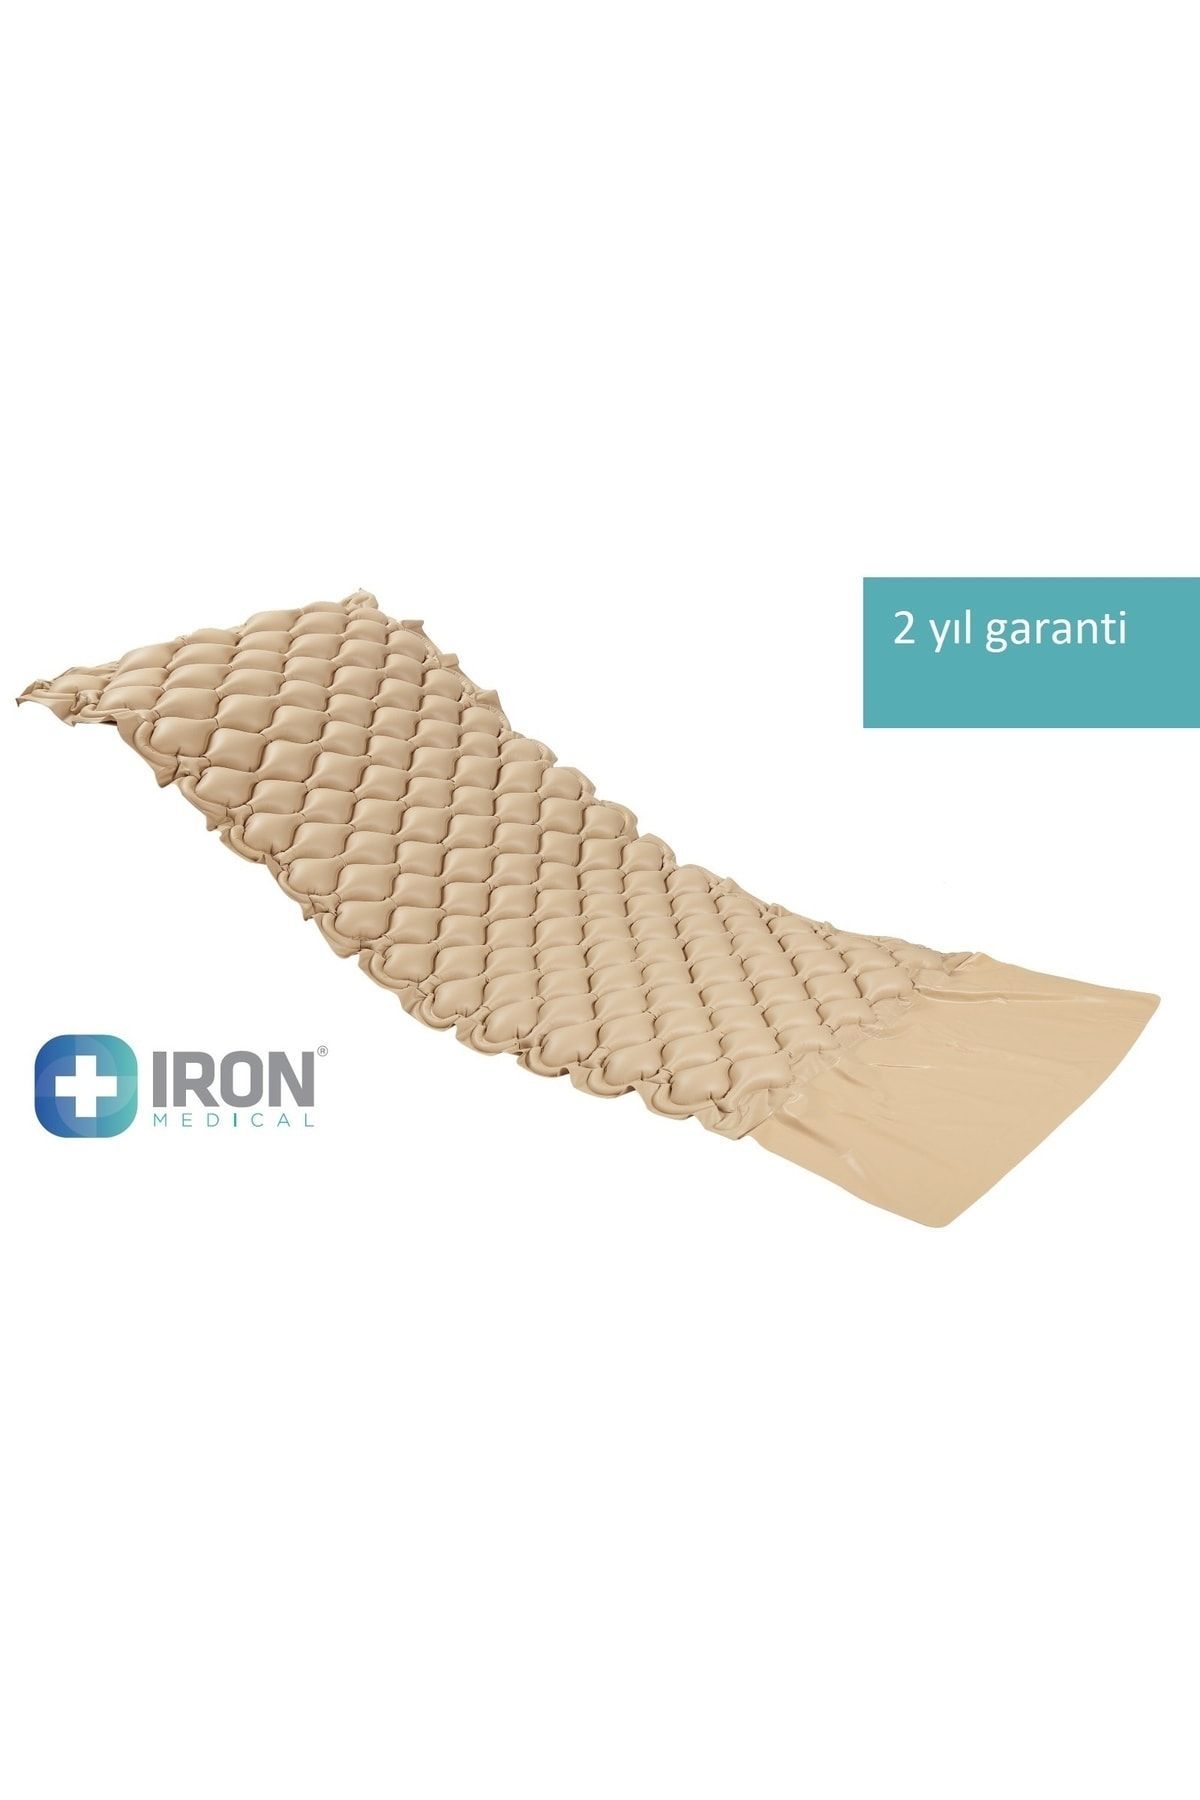 Iron Irn052 Yatak Yaralarını Önleyen Havalı Yatak Sistemi Baklava Tipi